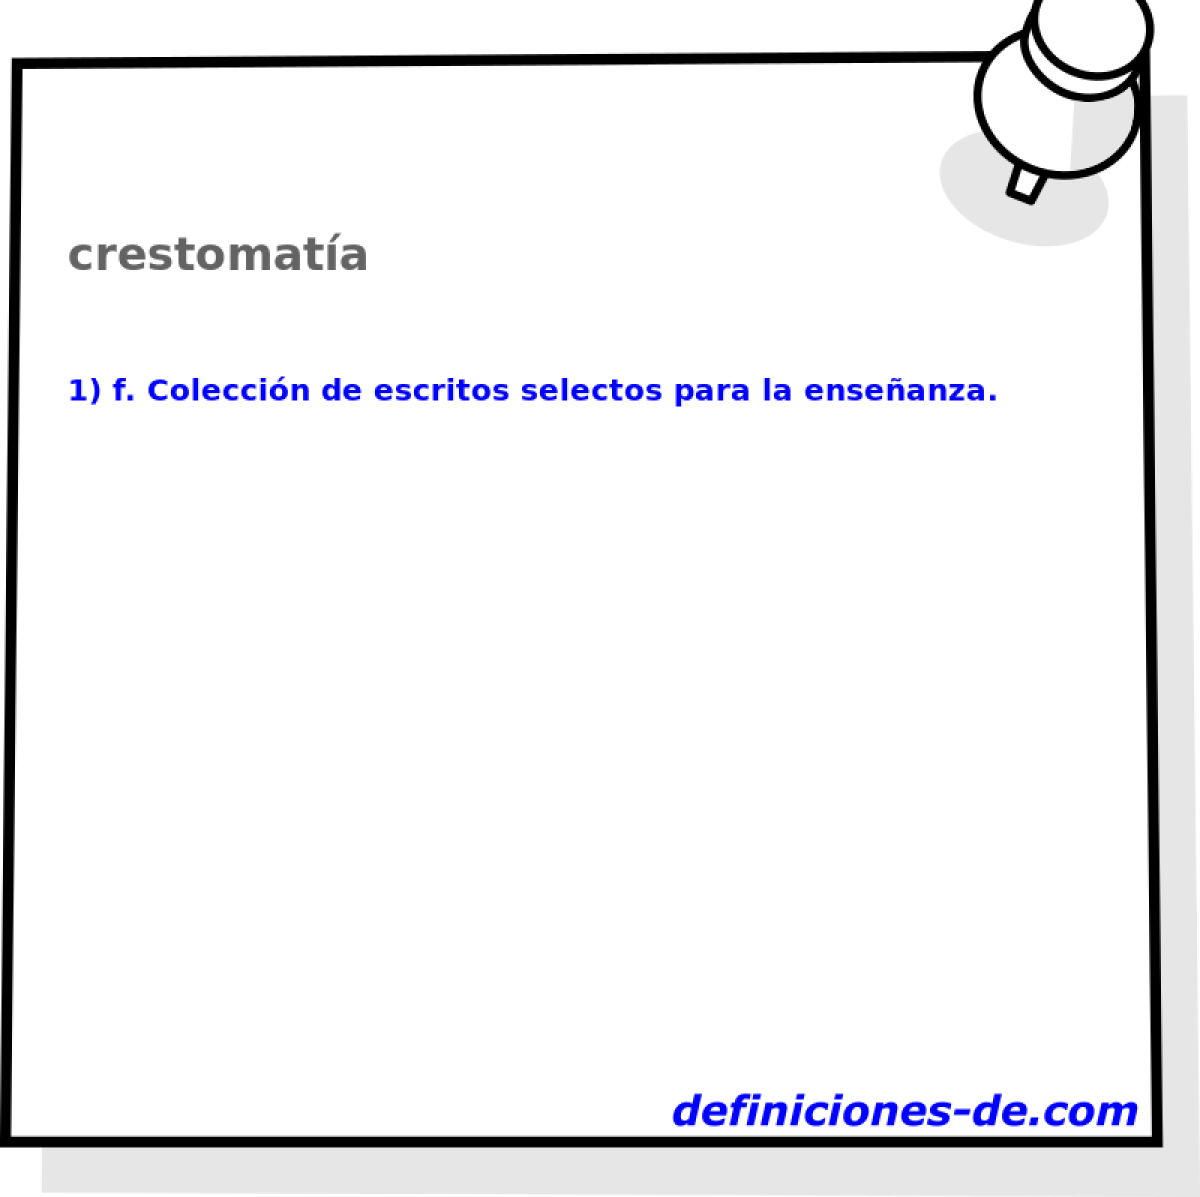 crestomata 